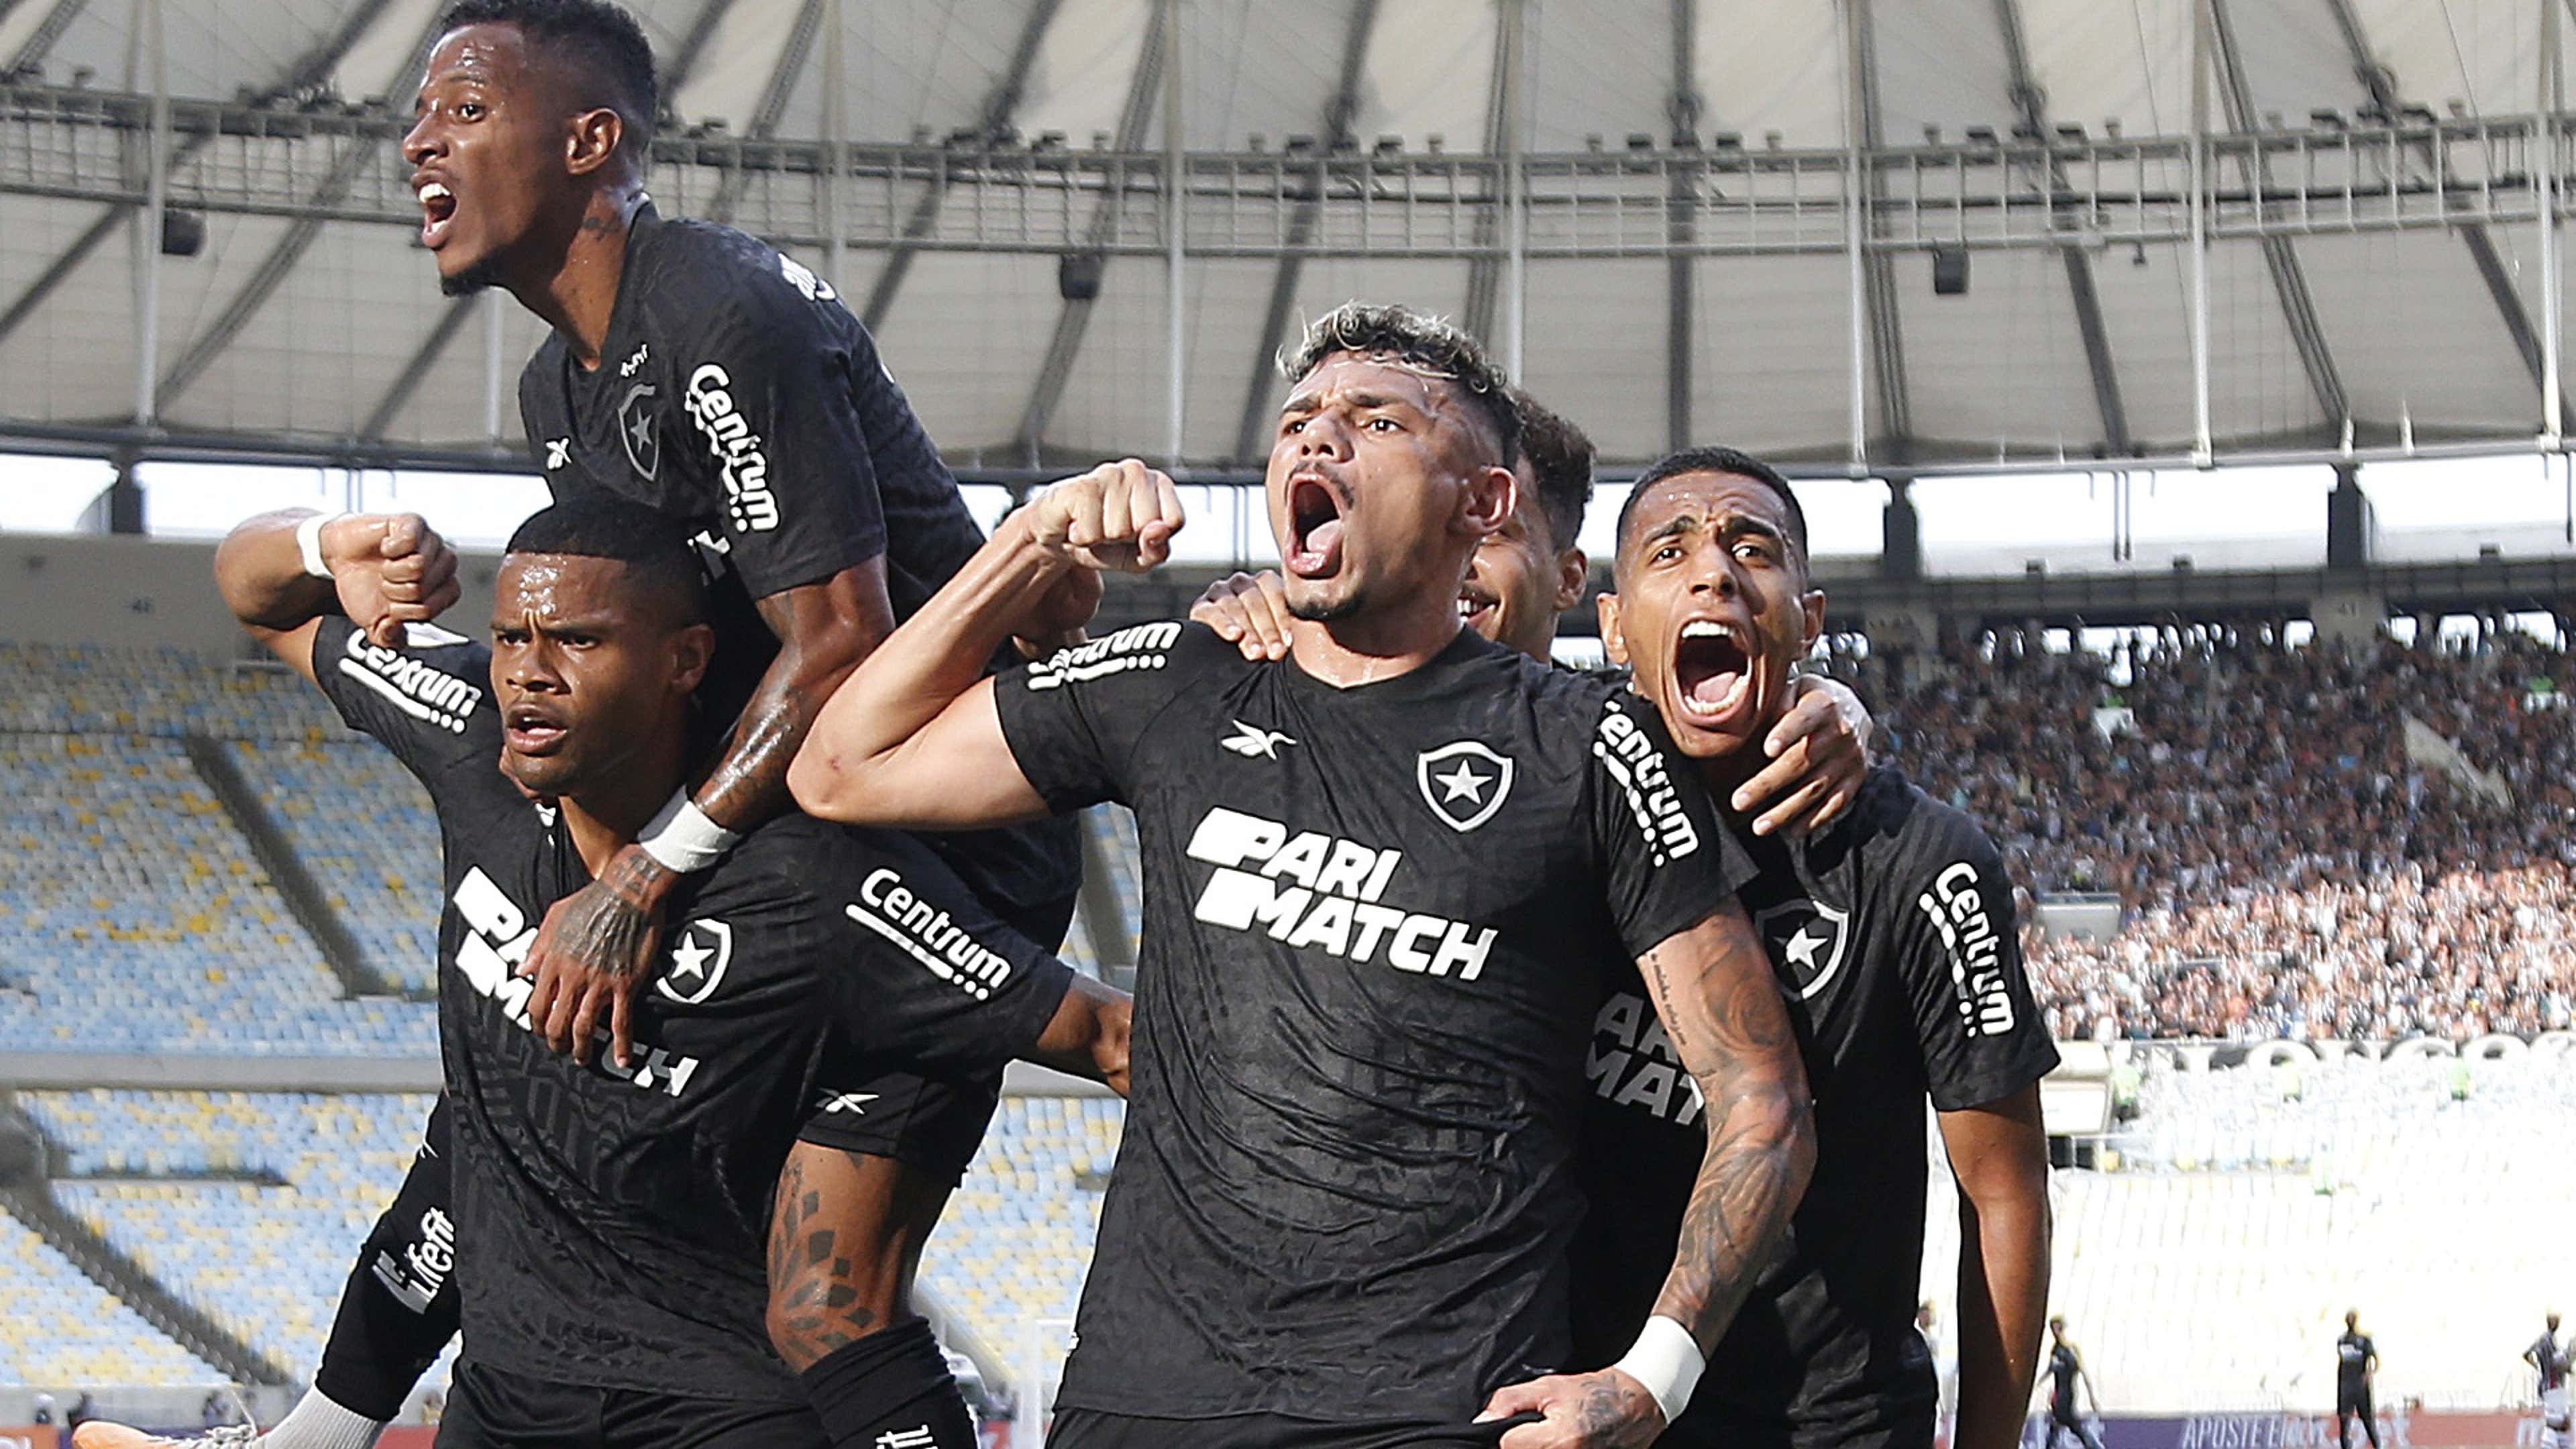 Grêmio vs Ypiranga: A Clash of Titans in Brazilian Football